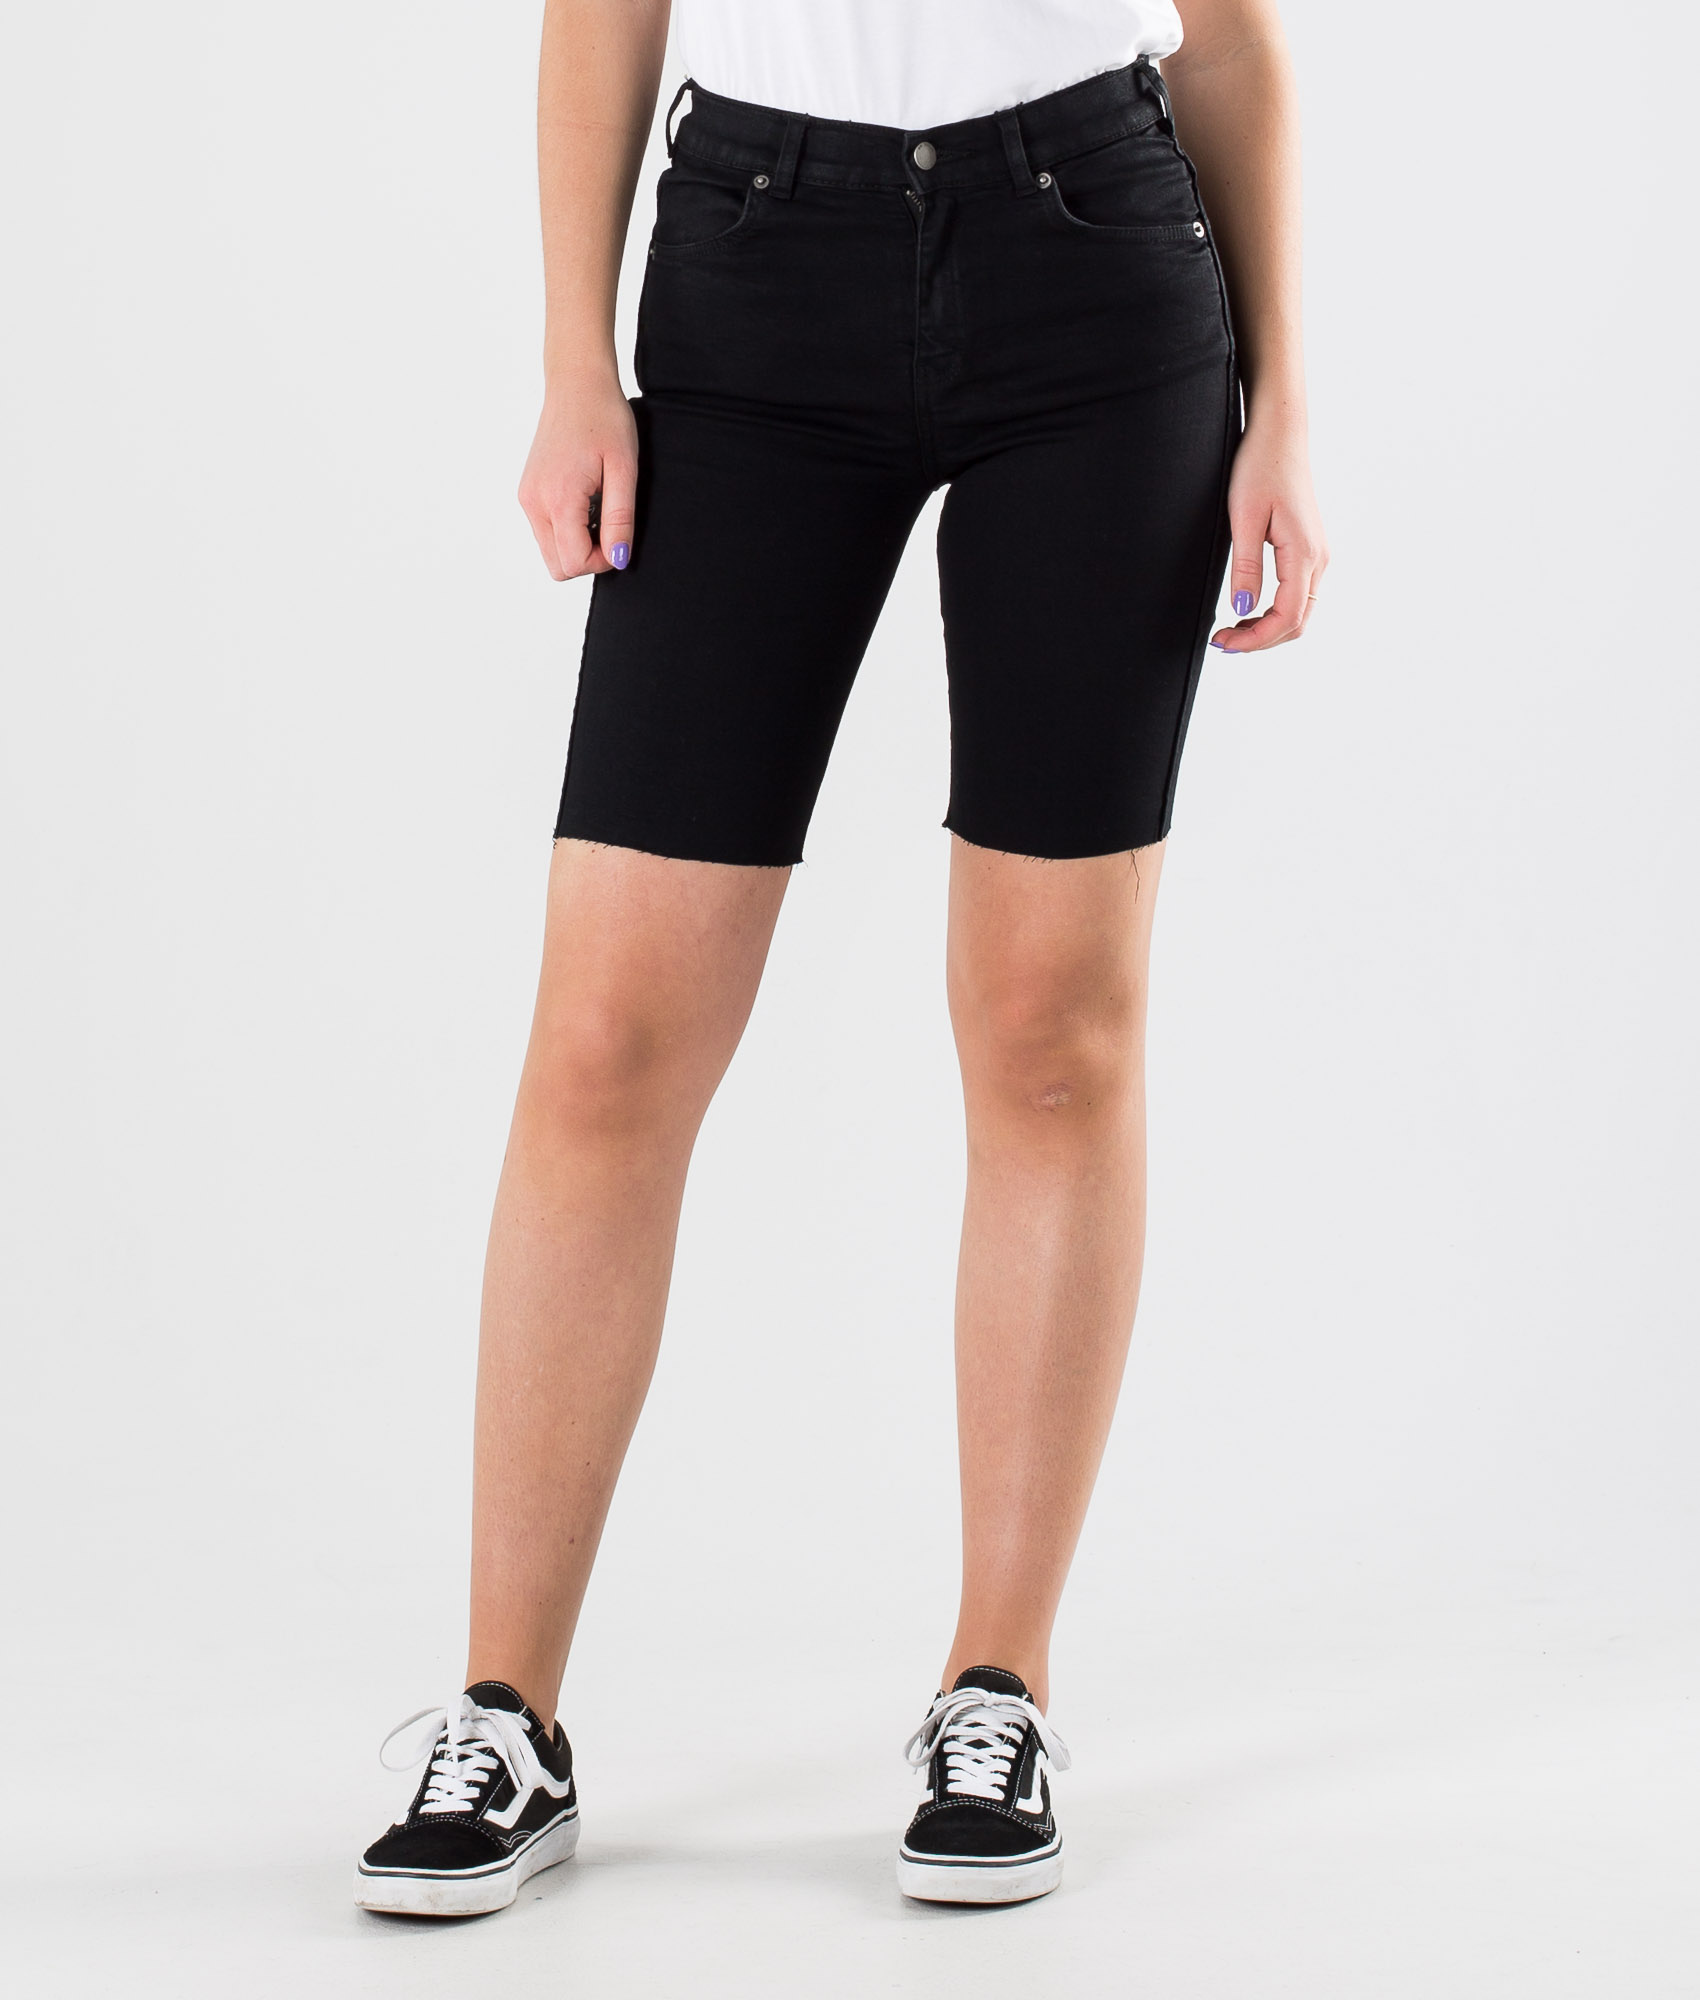 denim biker shorts women's